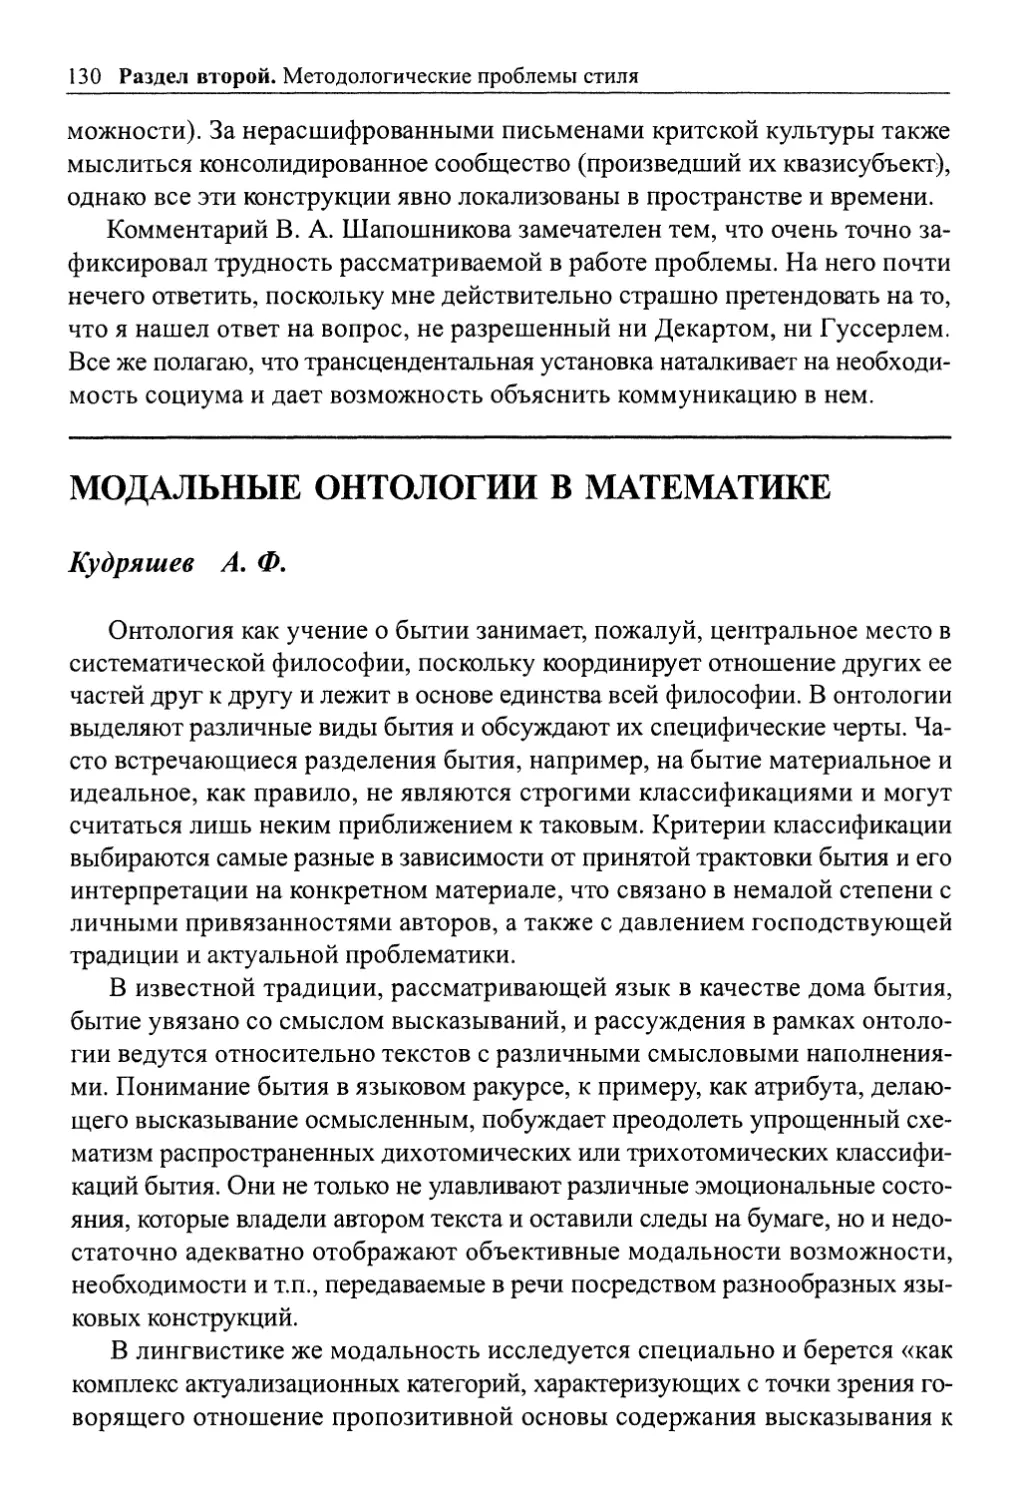 Кудряшев А. Ф. Модальные онтологии в математике